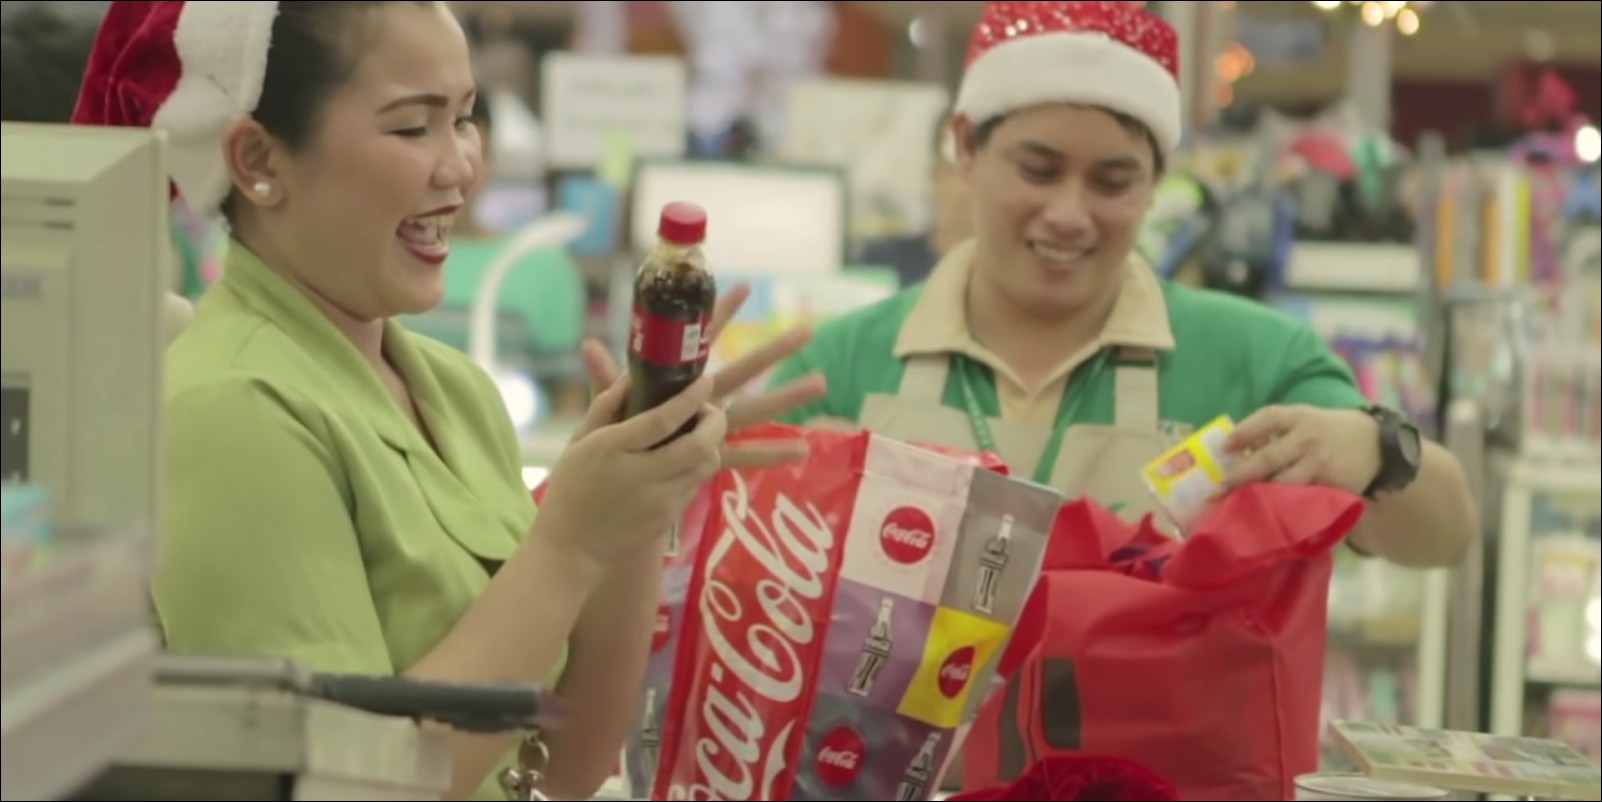 Coca-Cola video marketing strategy